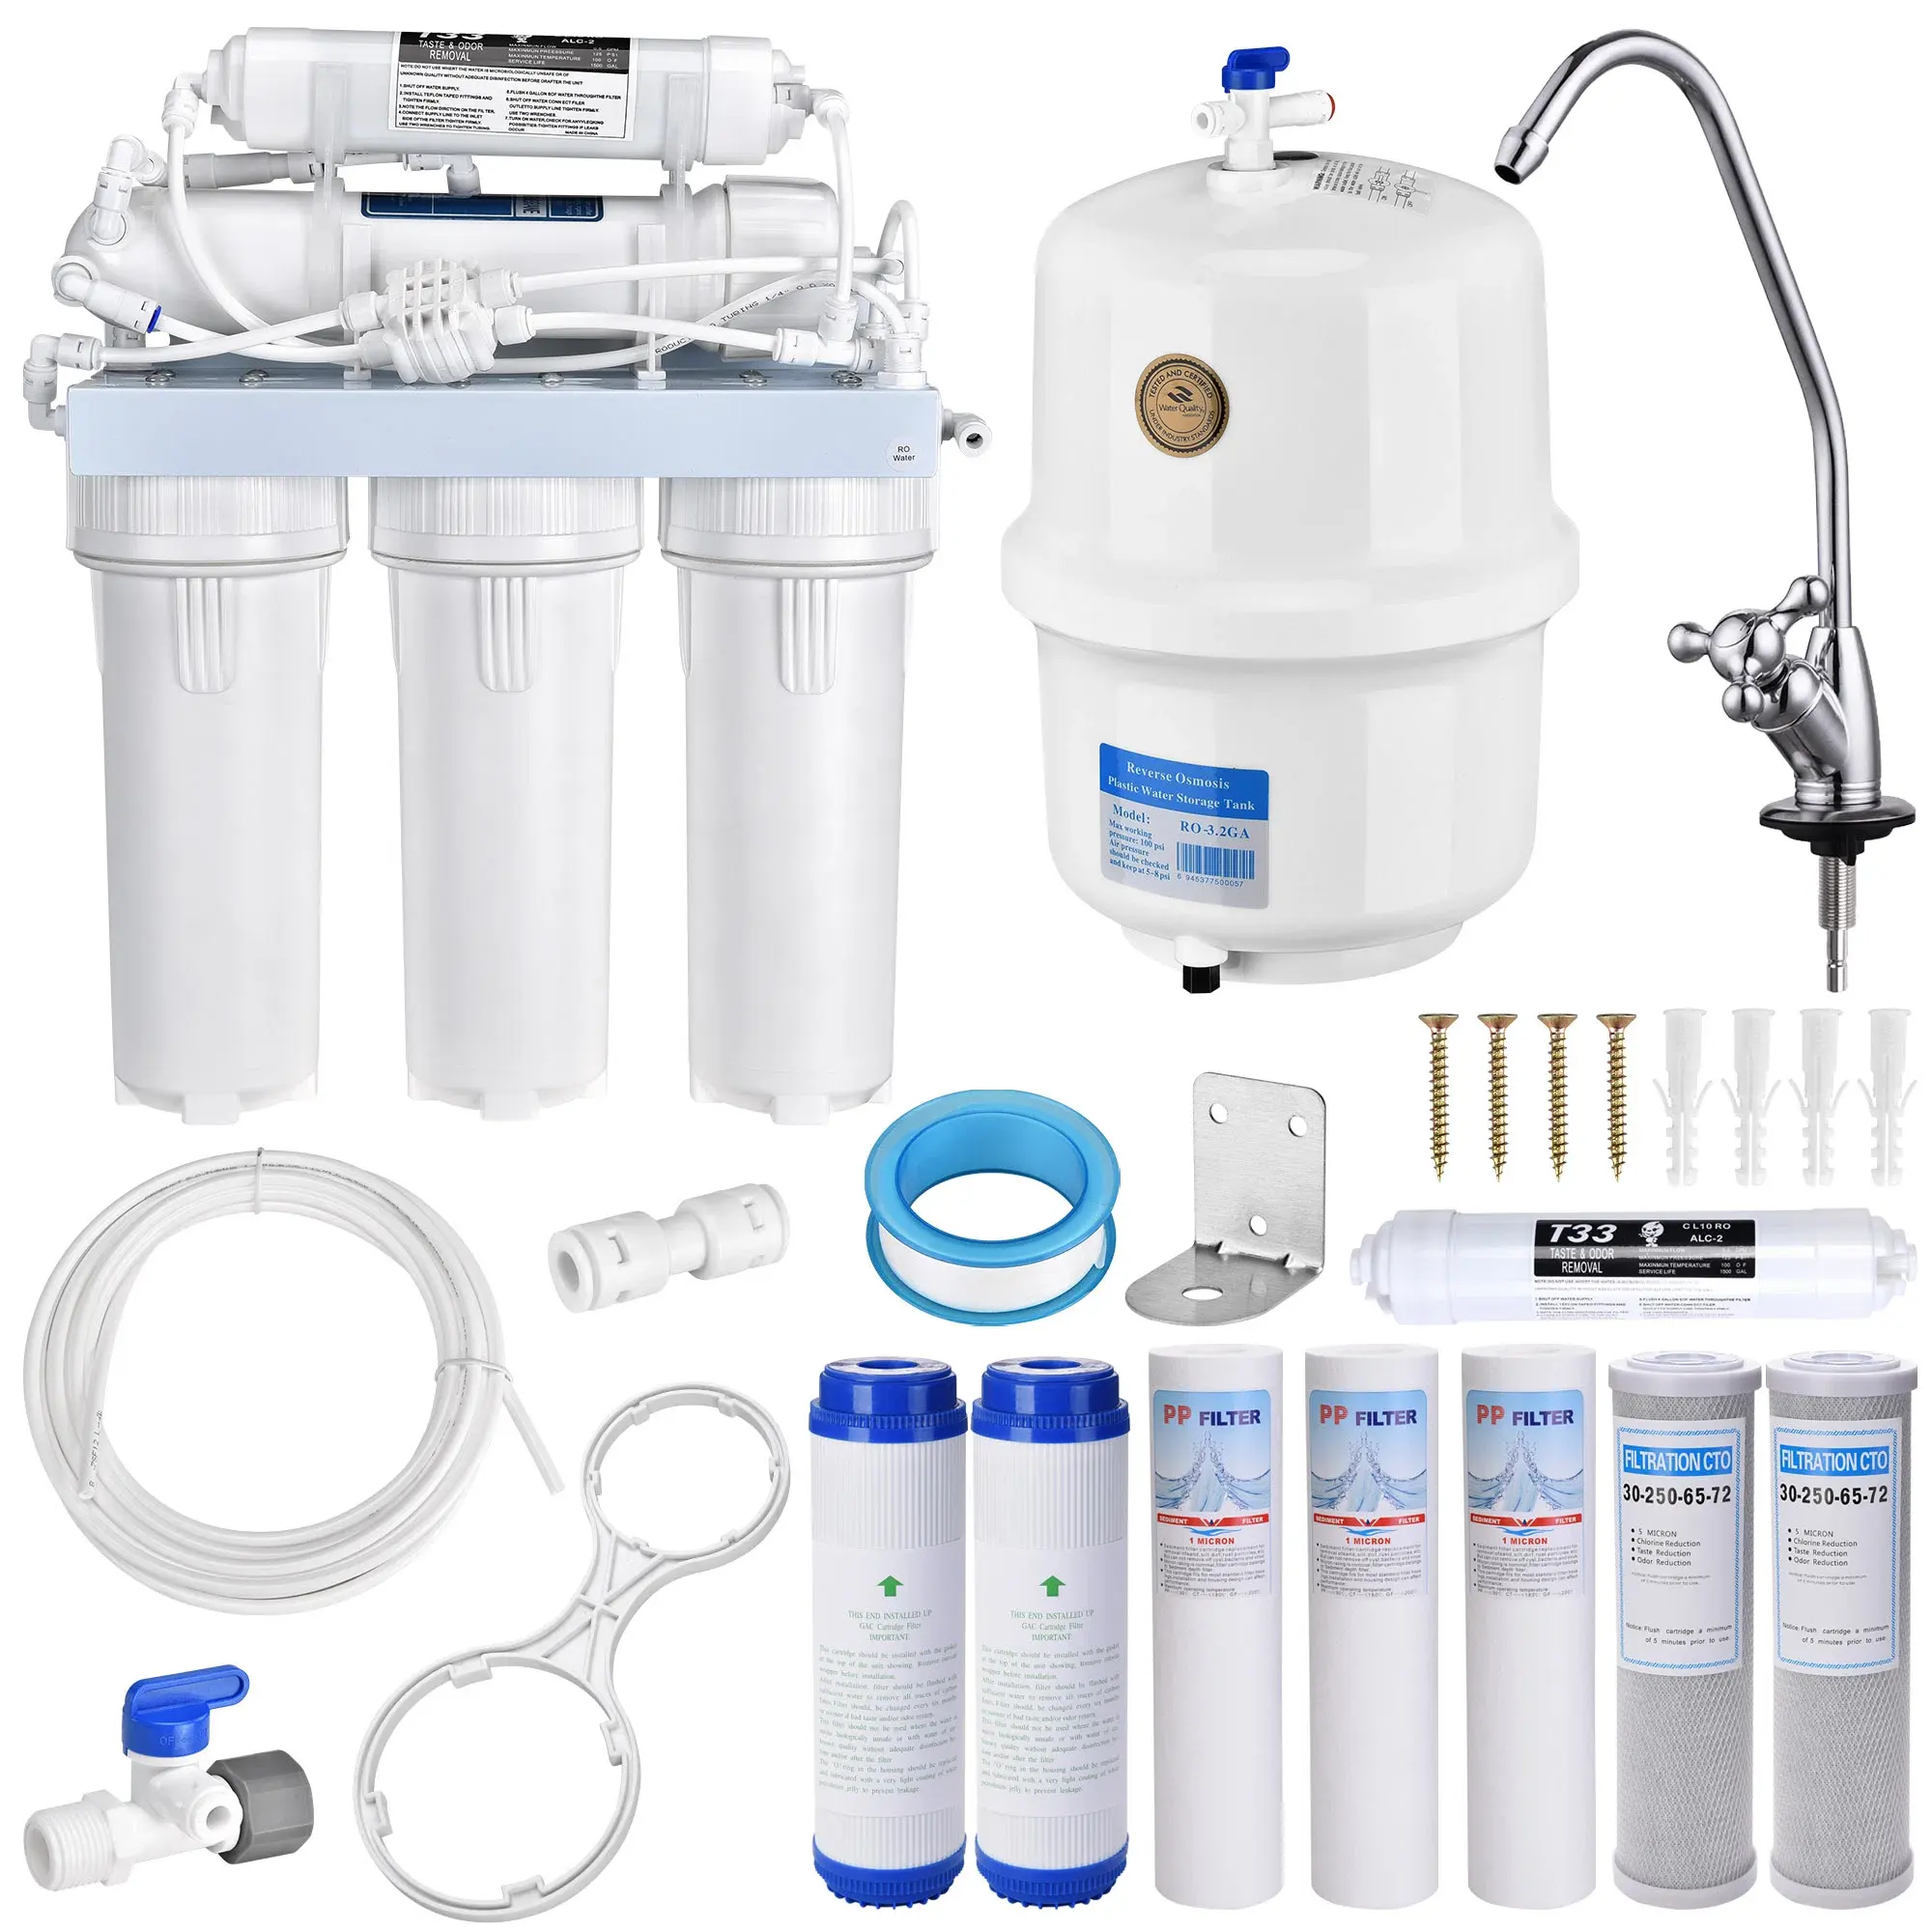 Sistema purificador de agua doméstico ro, Osmosis inversa de 7 etapas, compacto